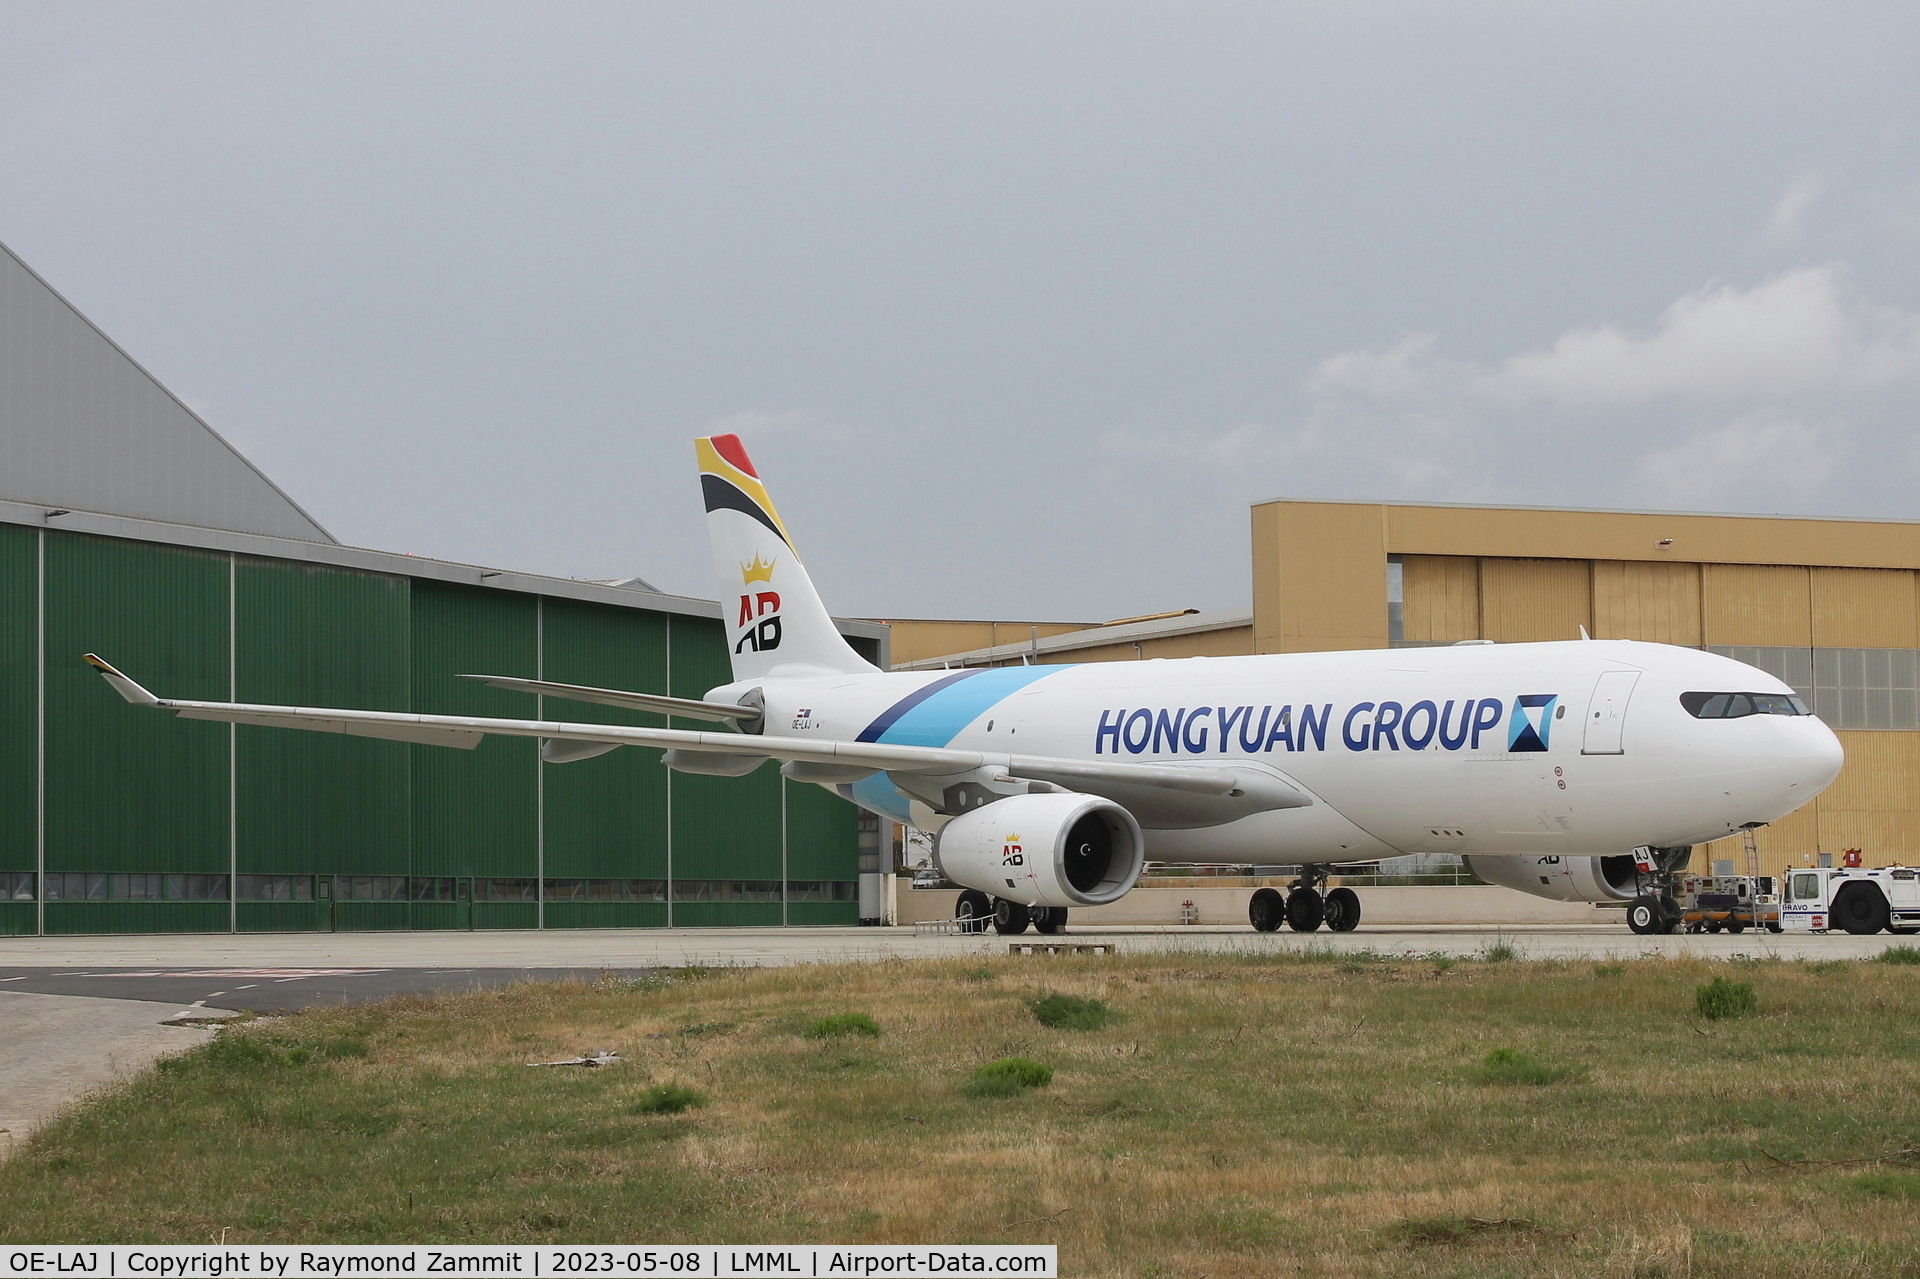 OE-LAJ, 2006 Airbus A330-243 C/N 717, A330 OE-LAJ Air Belgium (Hongyuan Group)